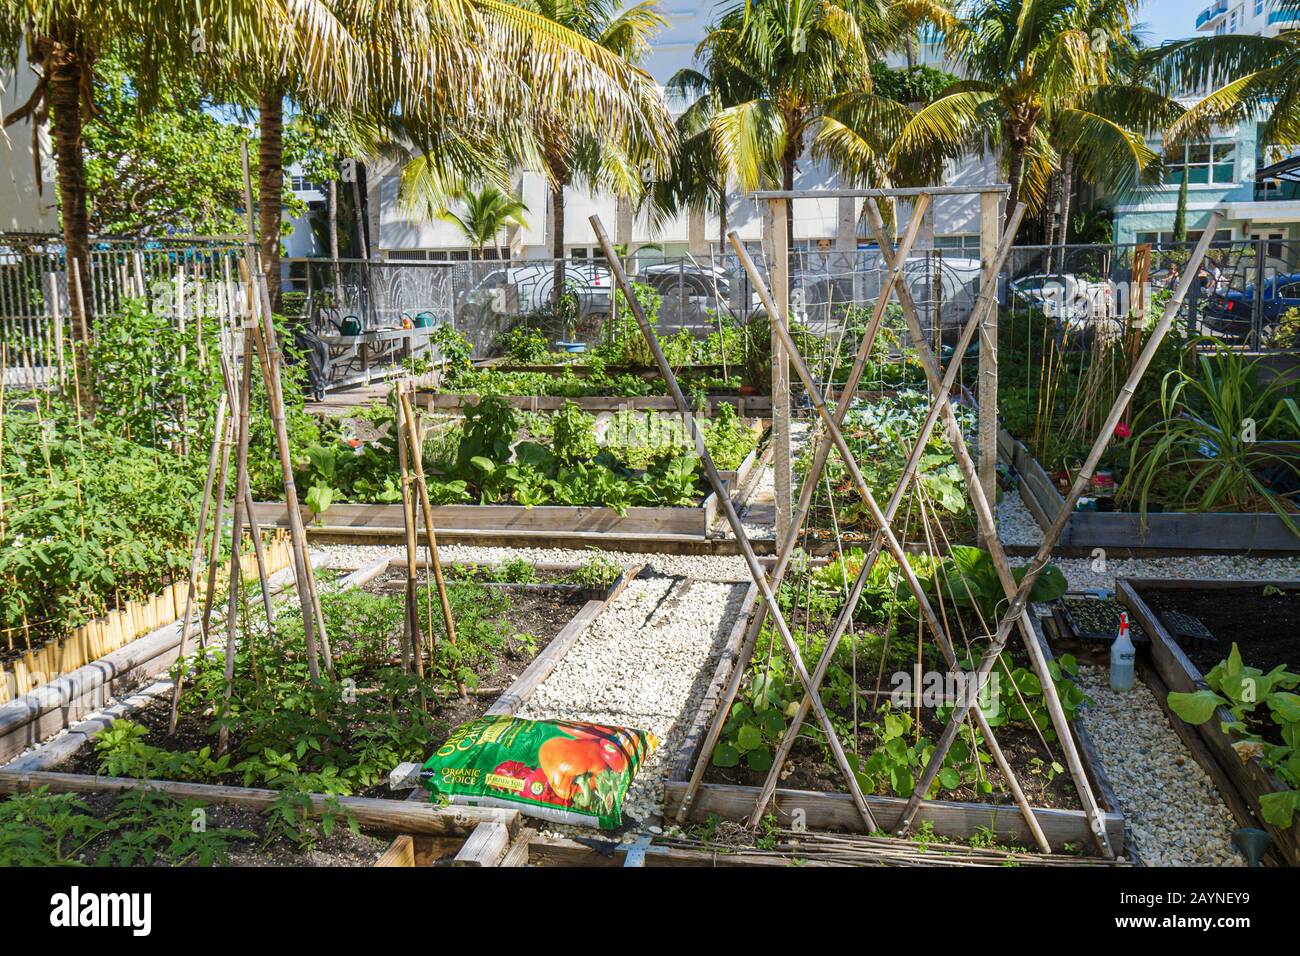 Miami Beach Florida, Victory Community Garden, parcelles, plantes, les visiteurs Voyage voyage touristique touristique repère culturel, culture, vacances Banque D'Images